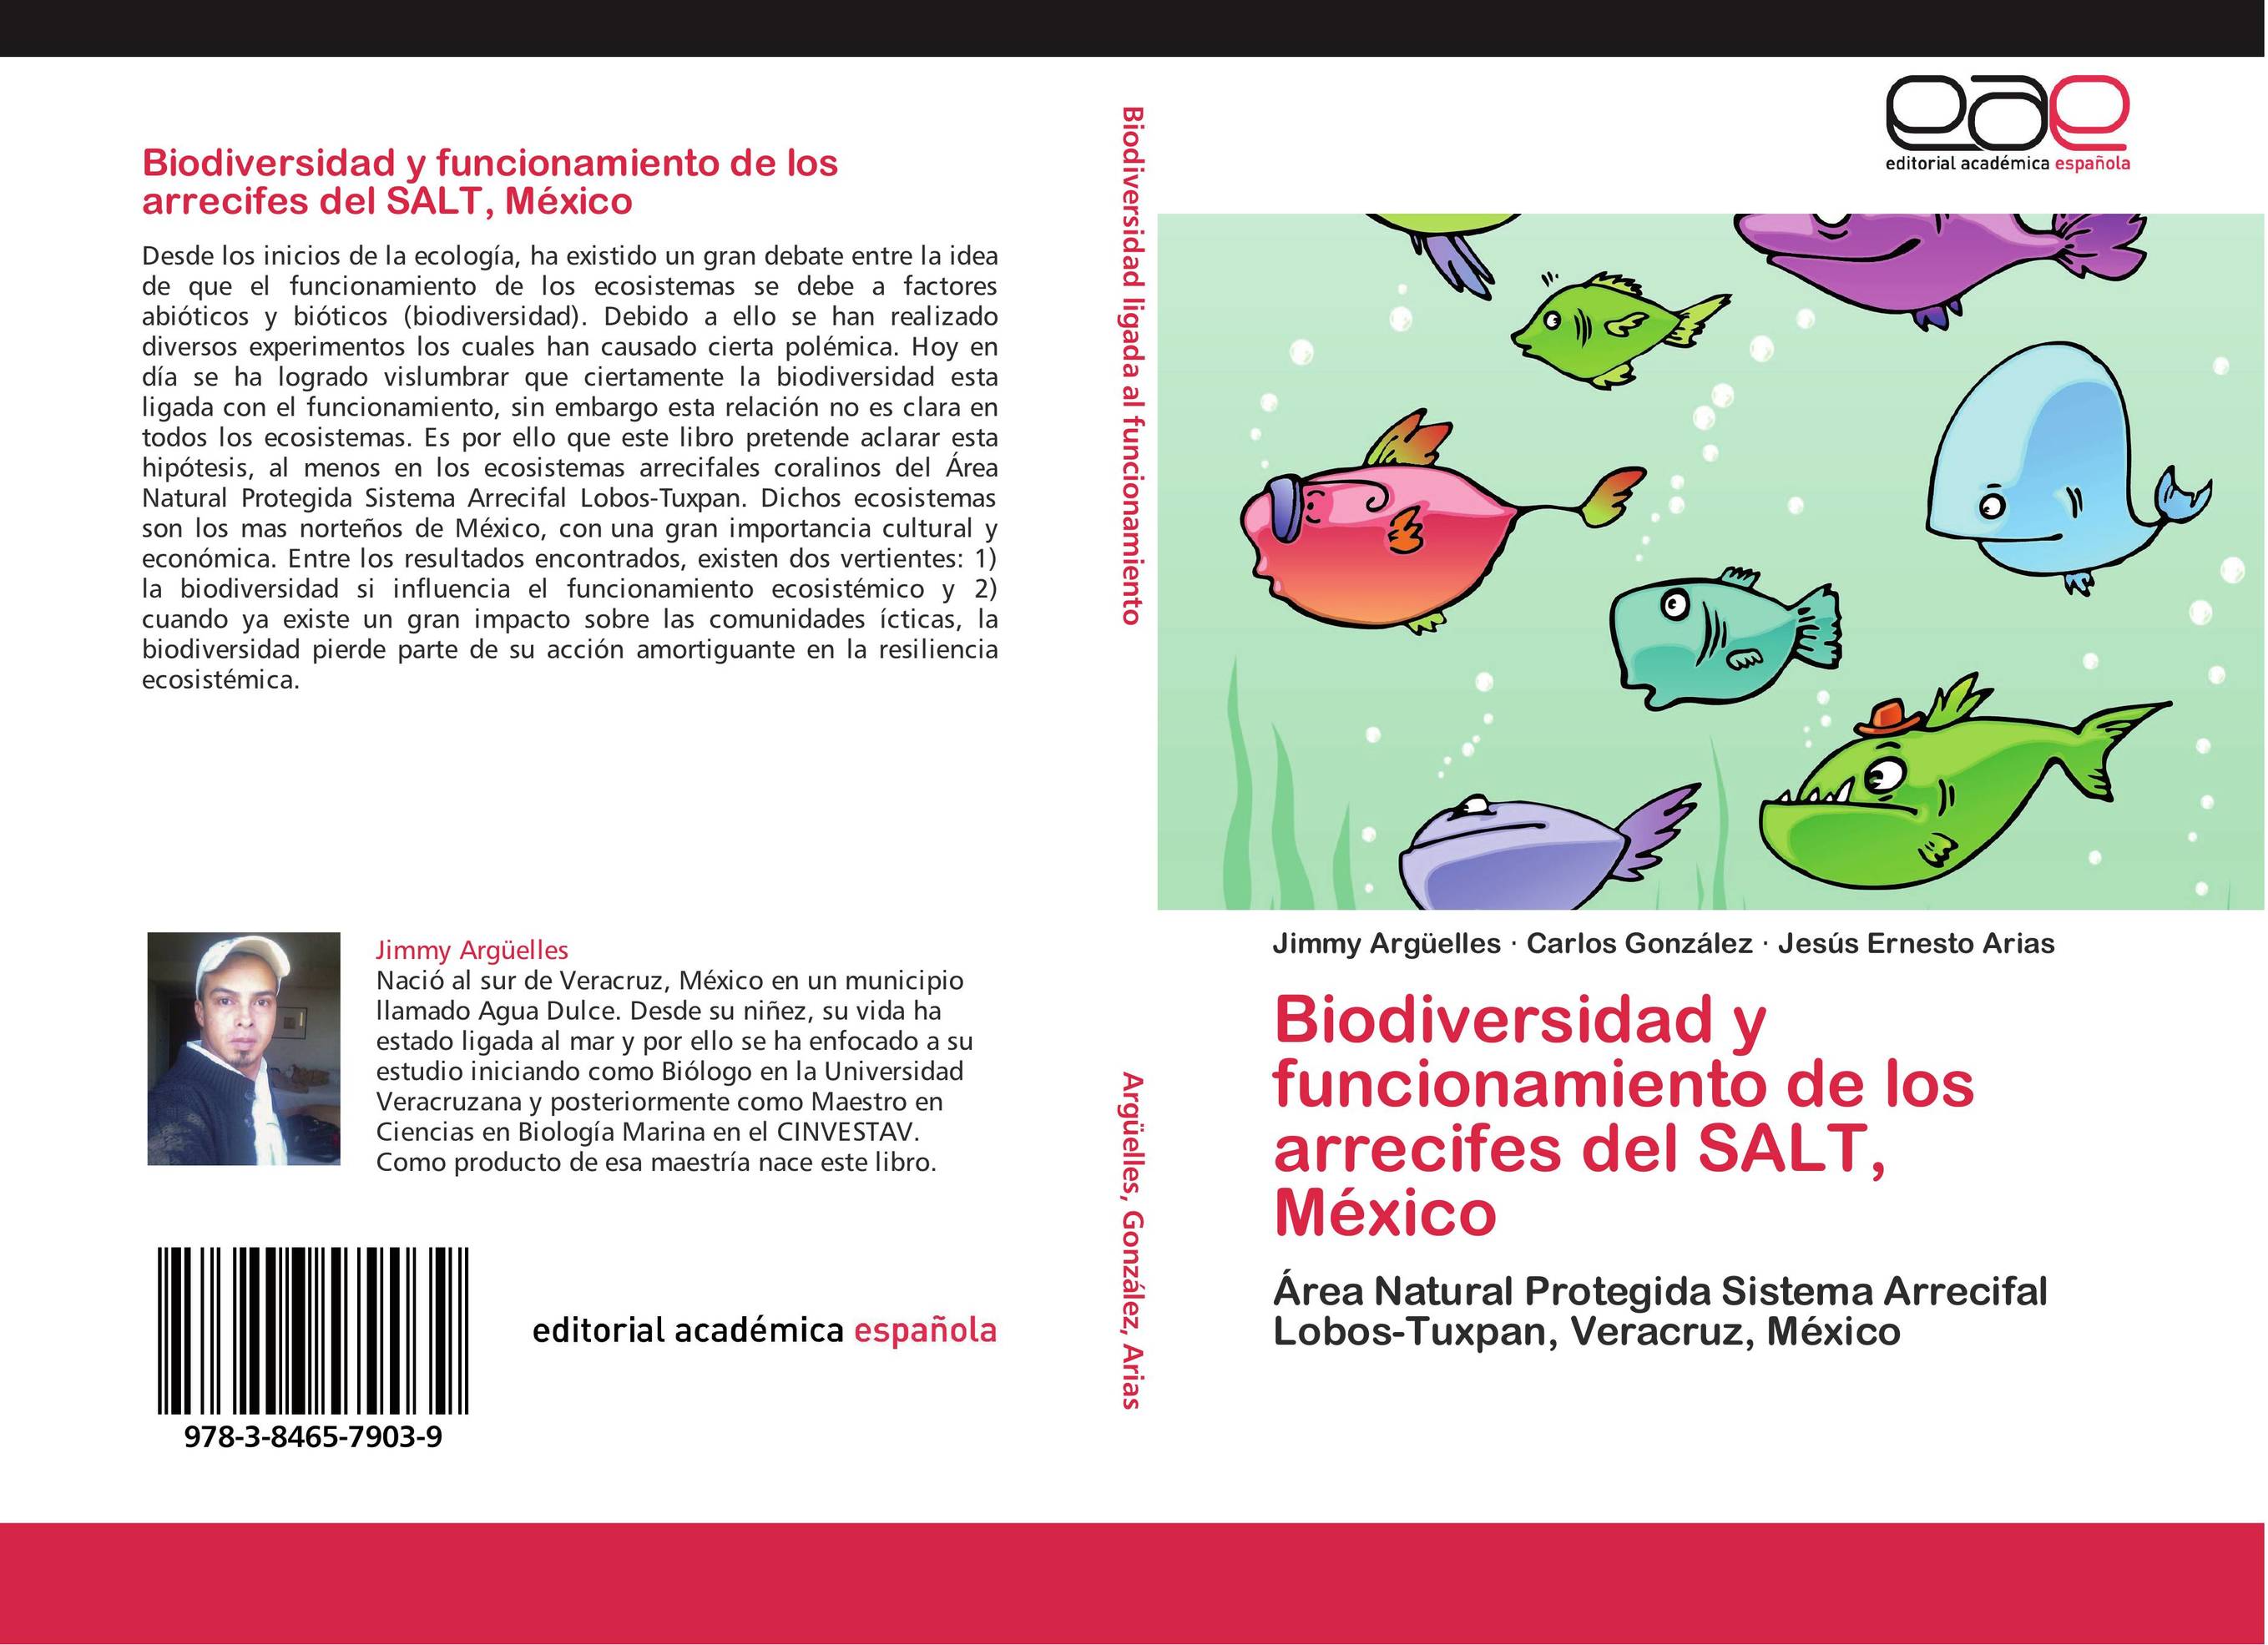 Biodiversidad y funcionamiento de los arrecifes del SALT, México